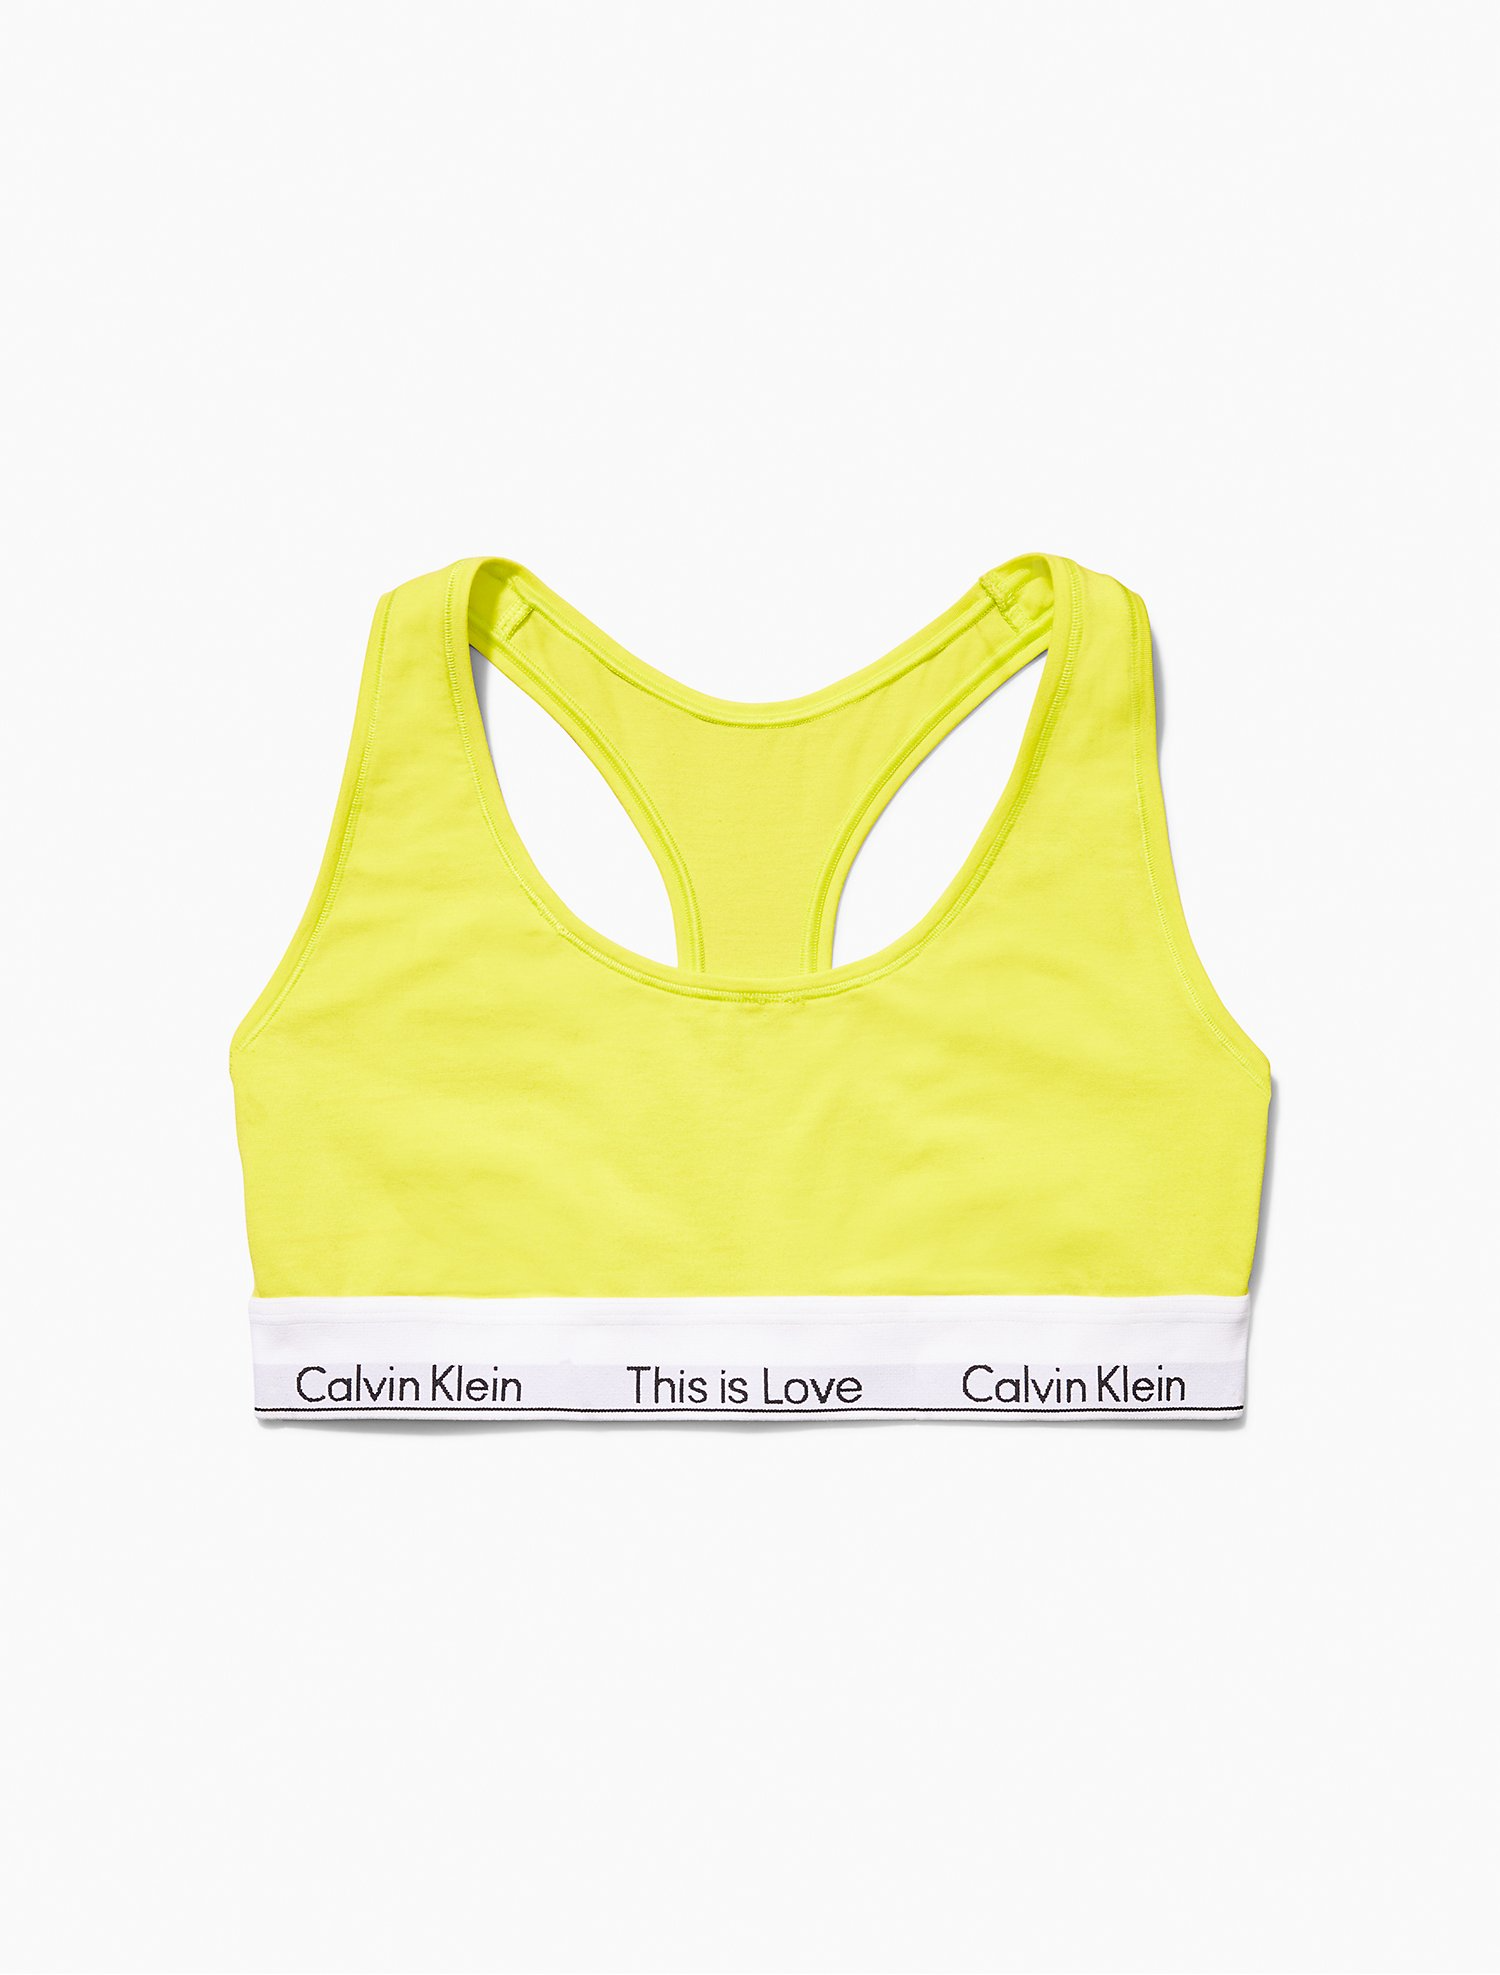 Calvin Klein Underwear This Is Love Pride Colourblock Modern Cotton Unlined  Bralette